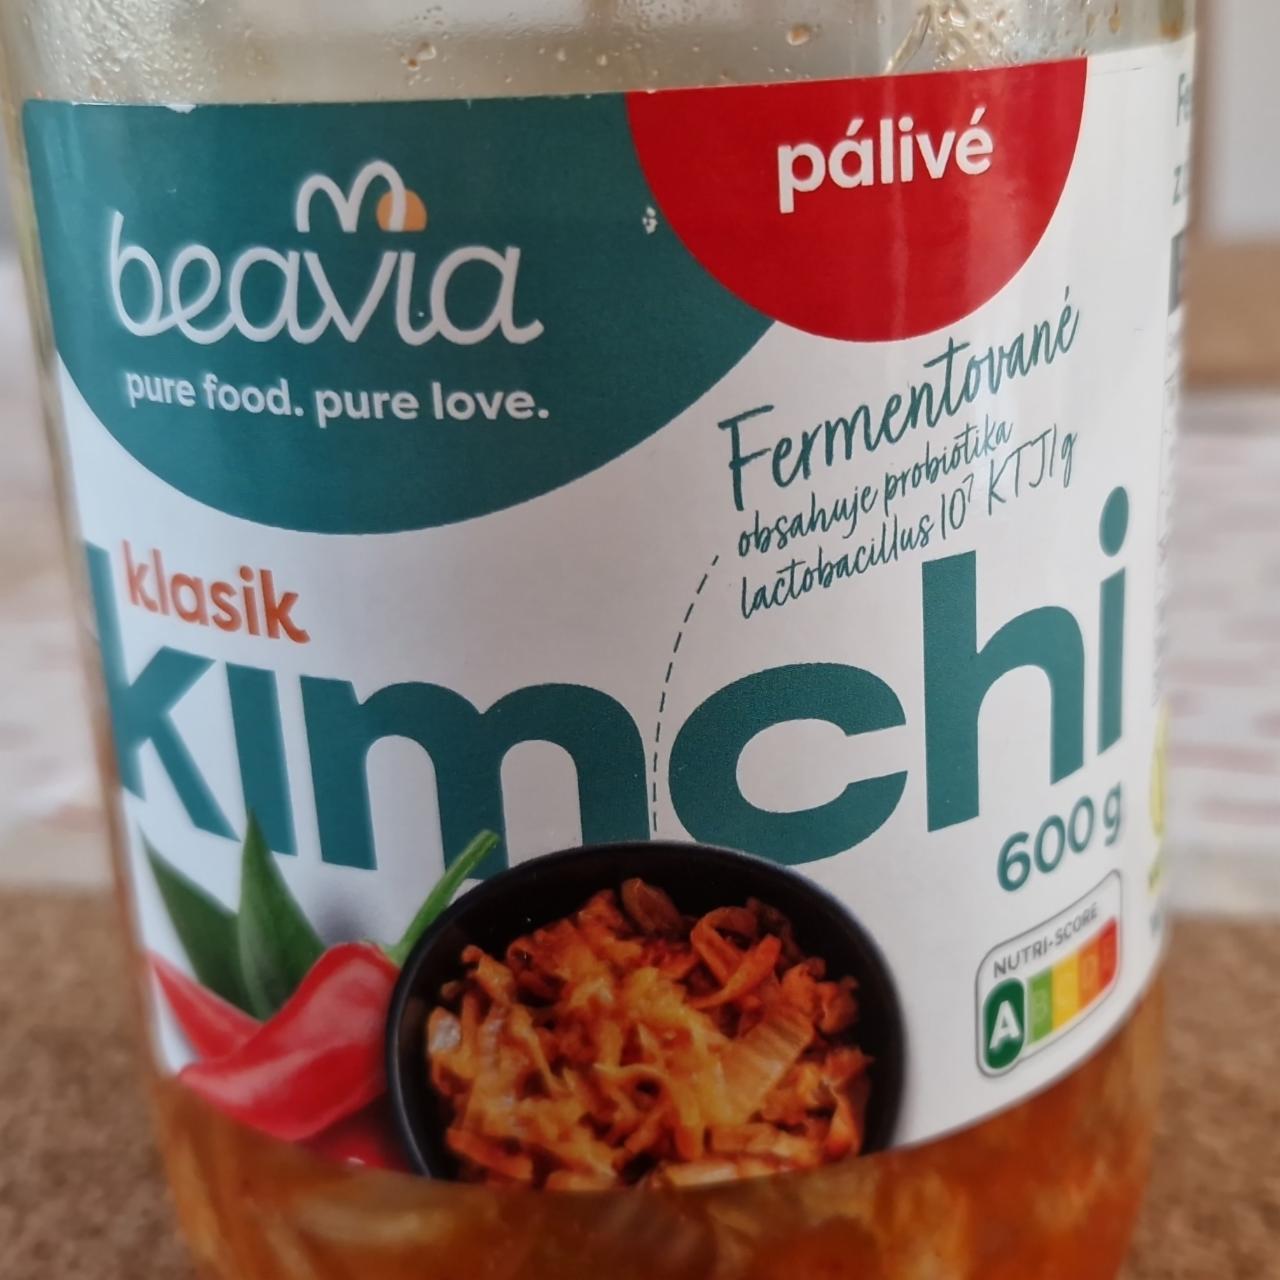 Fotografie - Klasik Kimchi pálivé Beavia